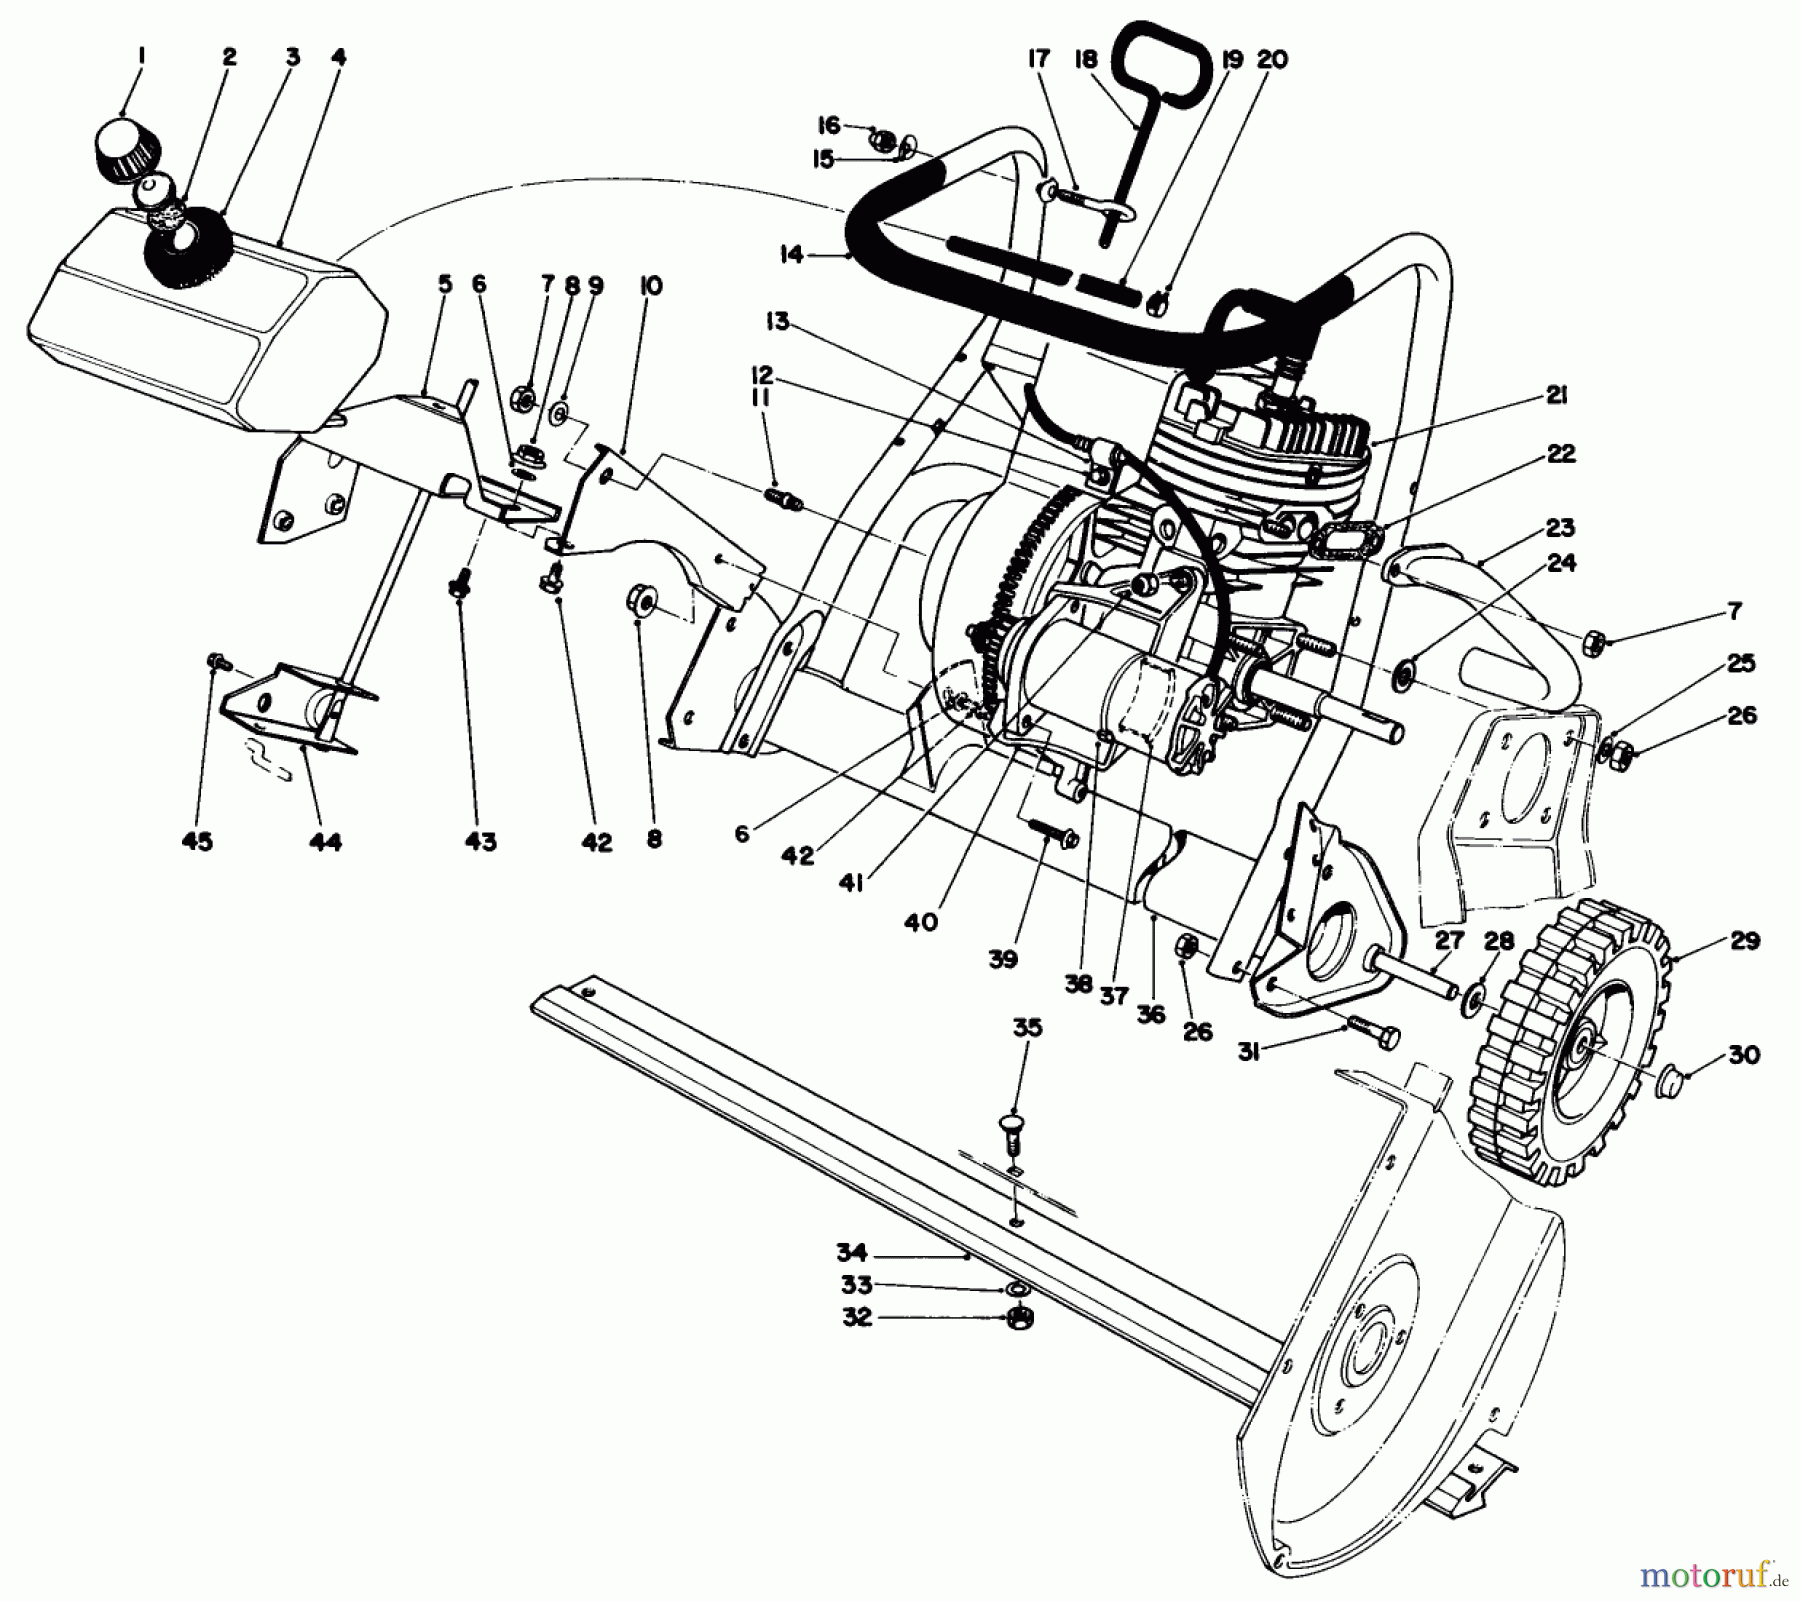  Toro Neu Snow Blowers/Snow Throwers Seite 1 38162 (S-620) - Toro S-620 Snowthrower, 1988 (8000001-8999999) ENGINE ASSEMBLY